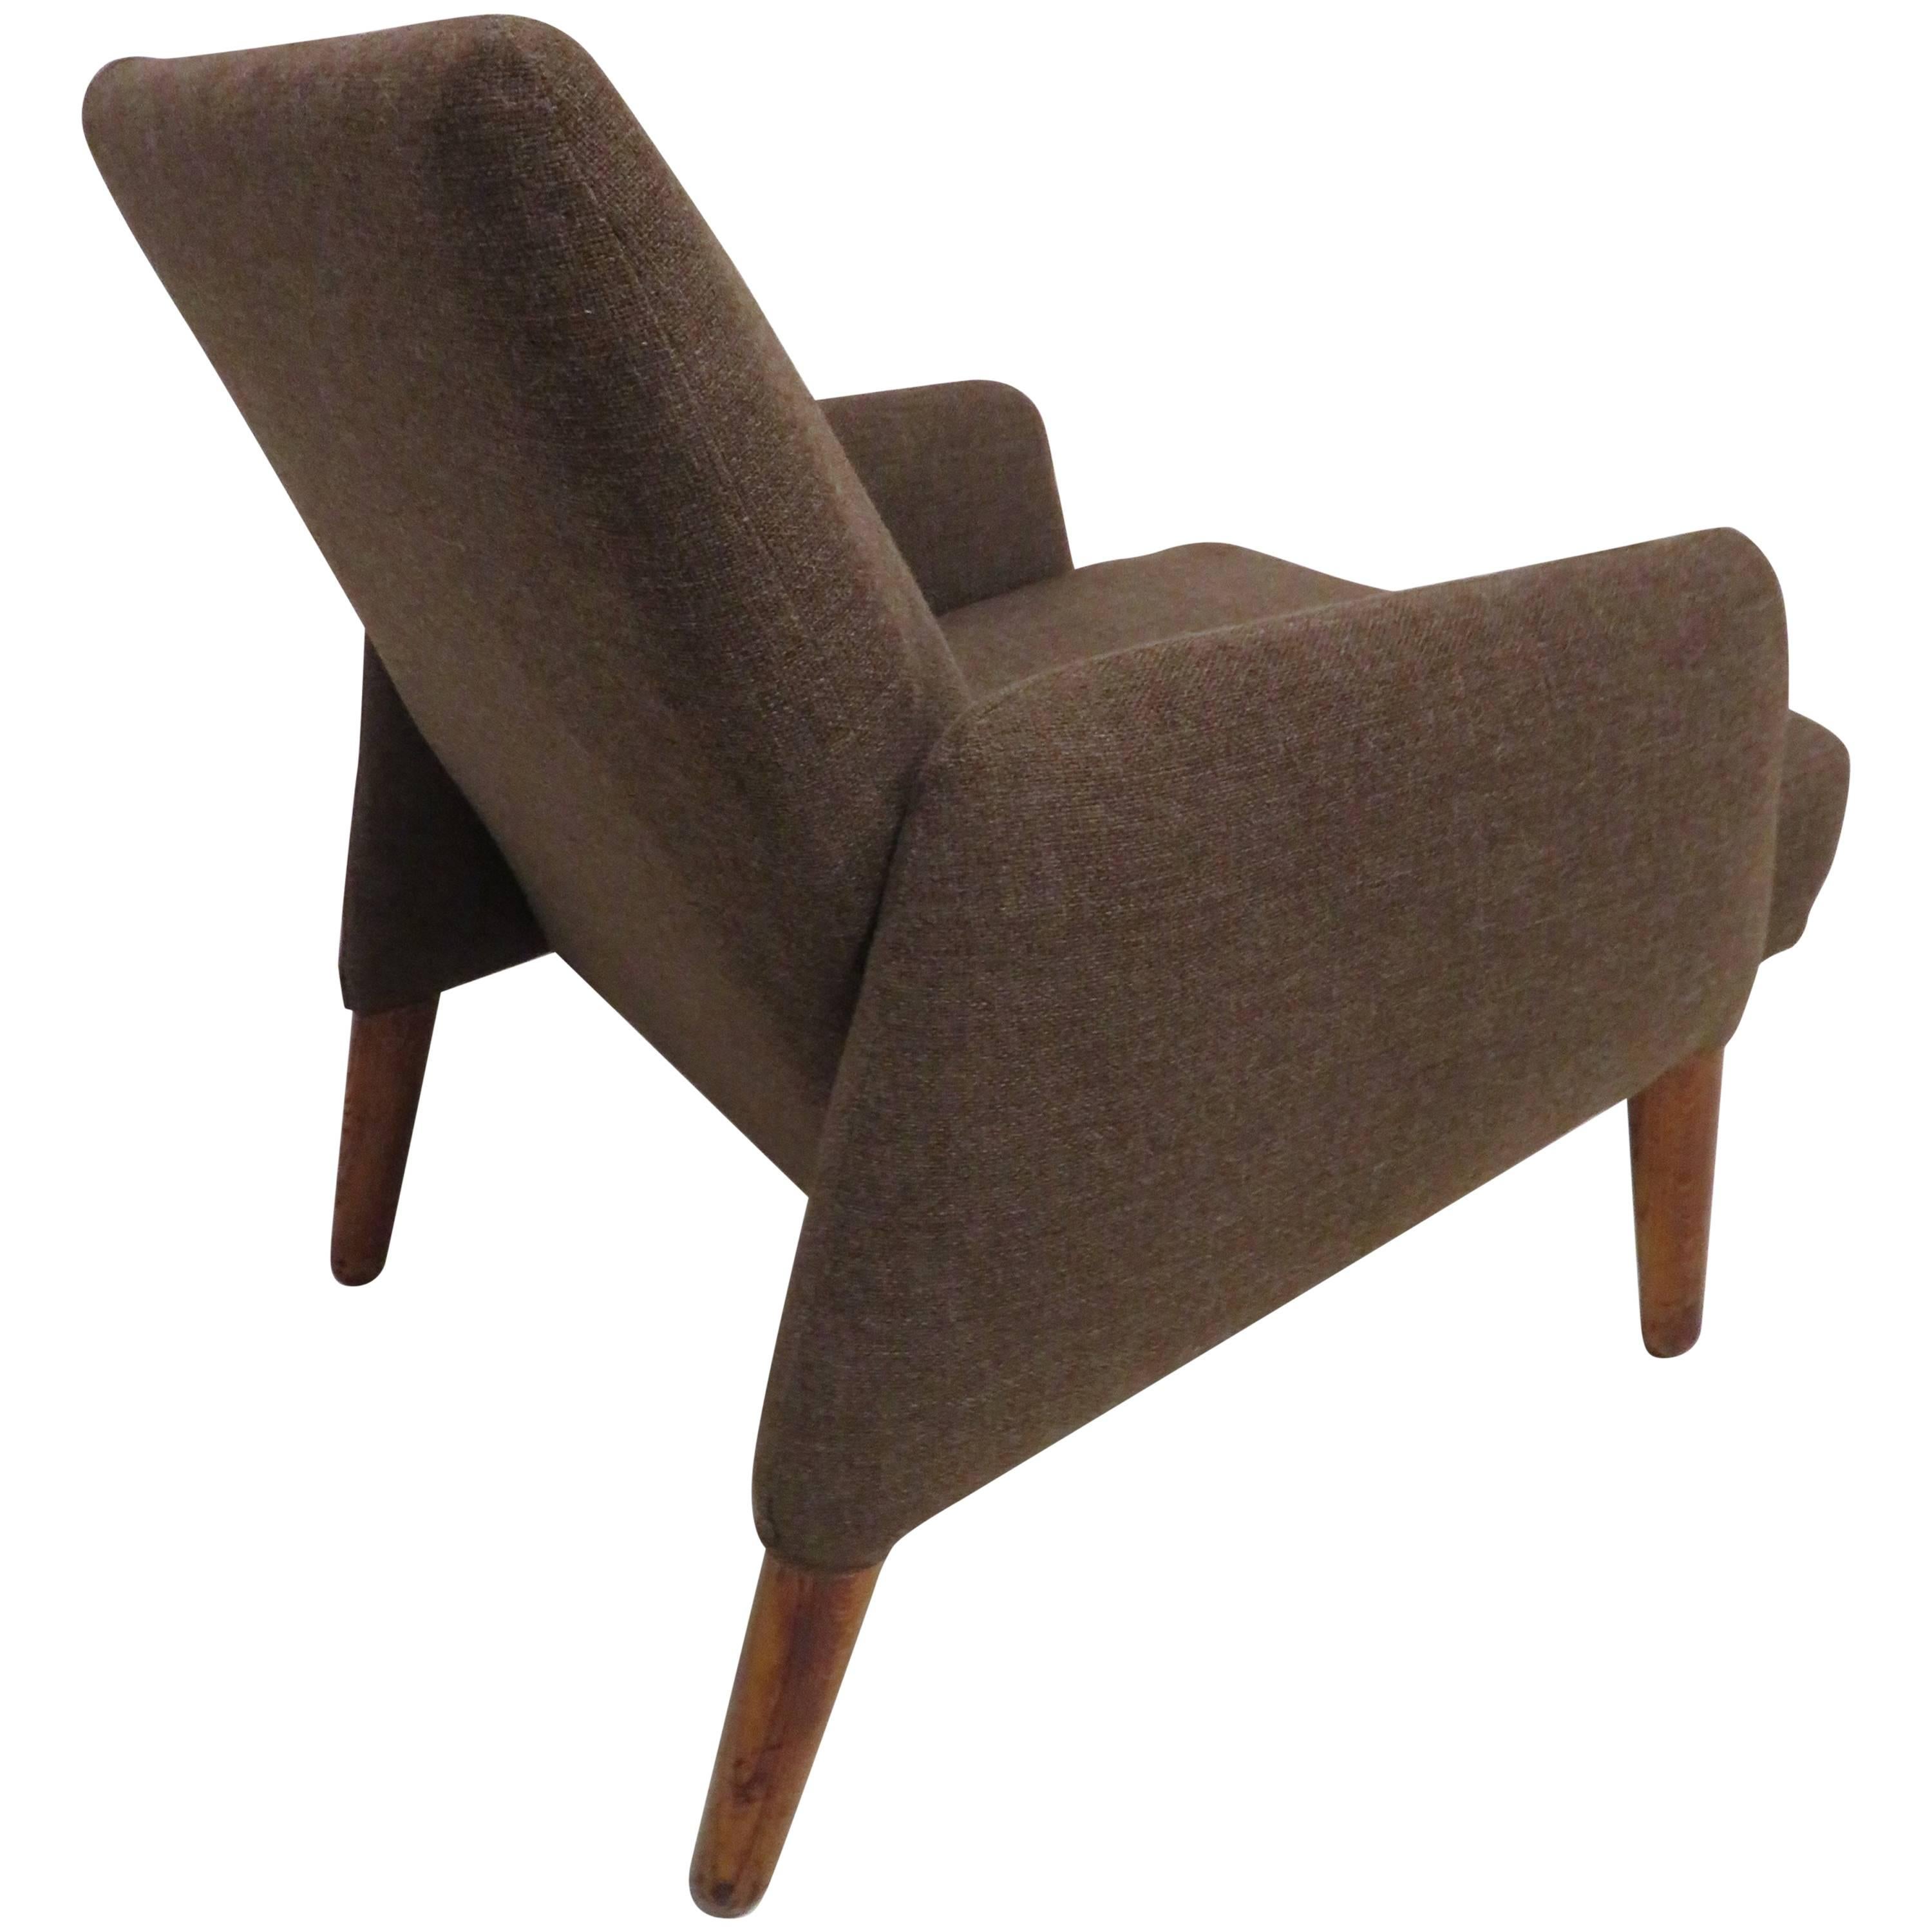 Handsome Teak Lounge Chair Mid-Century Modern